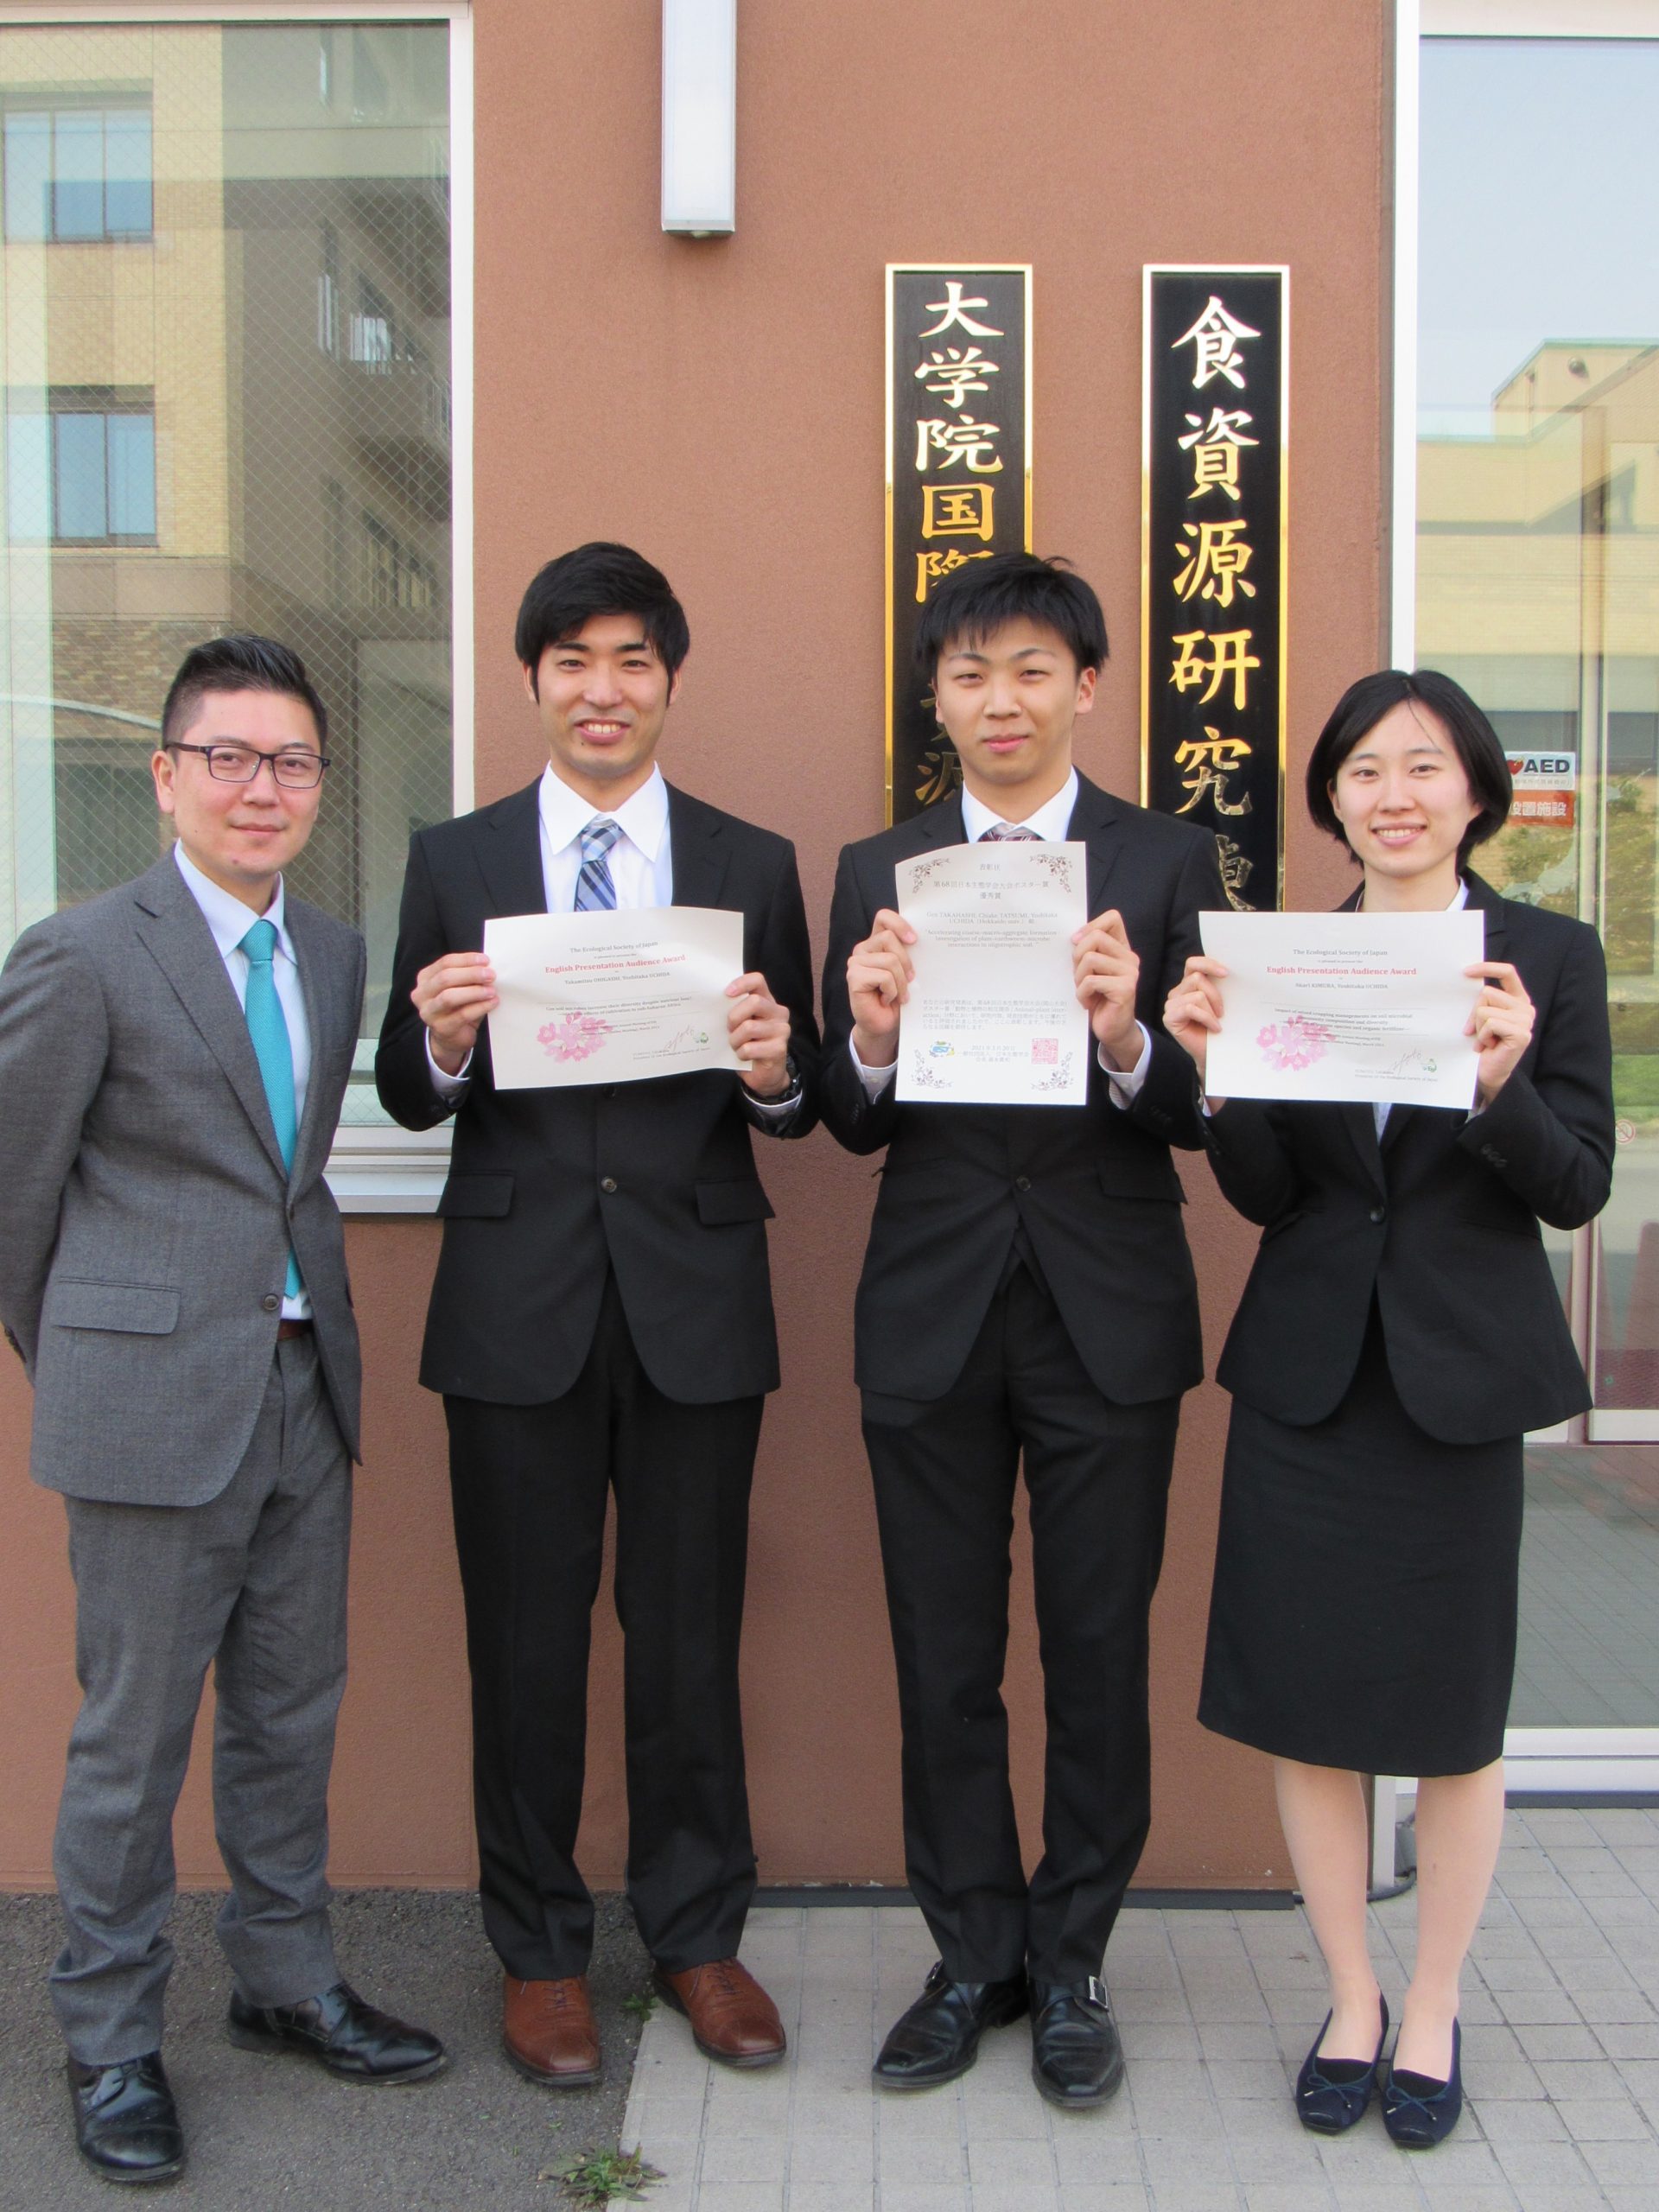 第68回日本生態学会において大東孝充さんと木村有歌理さんが英語口頭発表聴衆特別賞、高橋玄さんがポスター賞を受賞しました